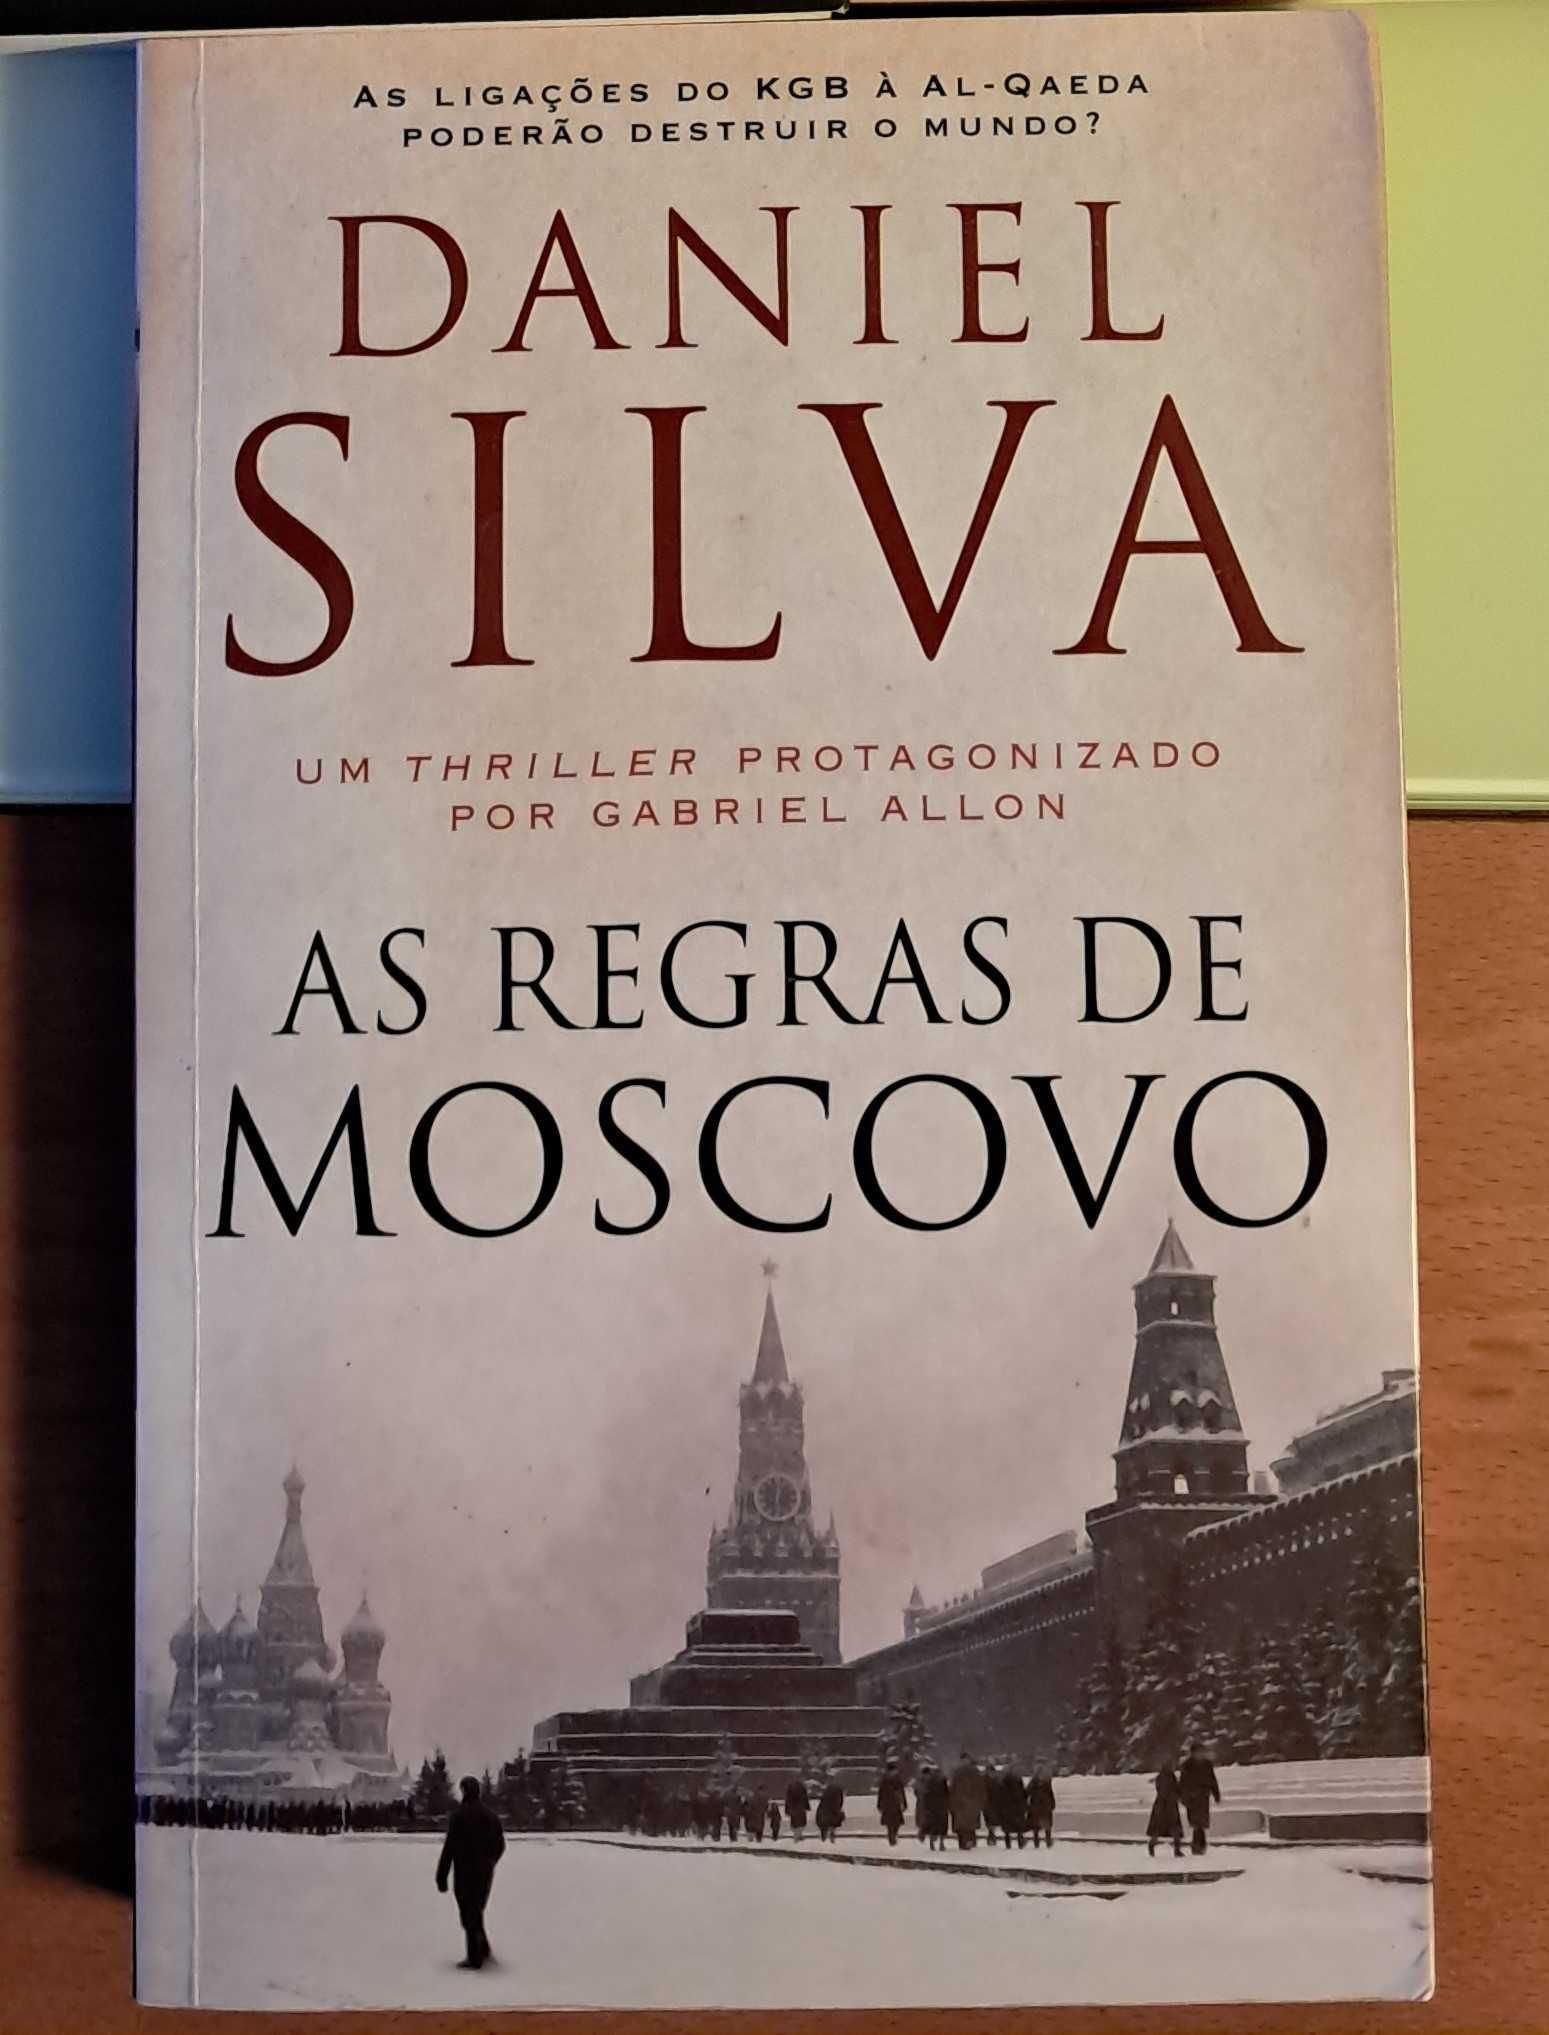 Livro "As regras de Moscovo" de Daniel Silva